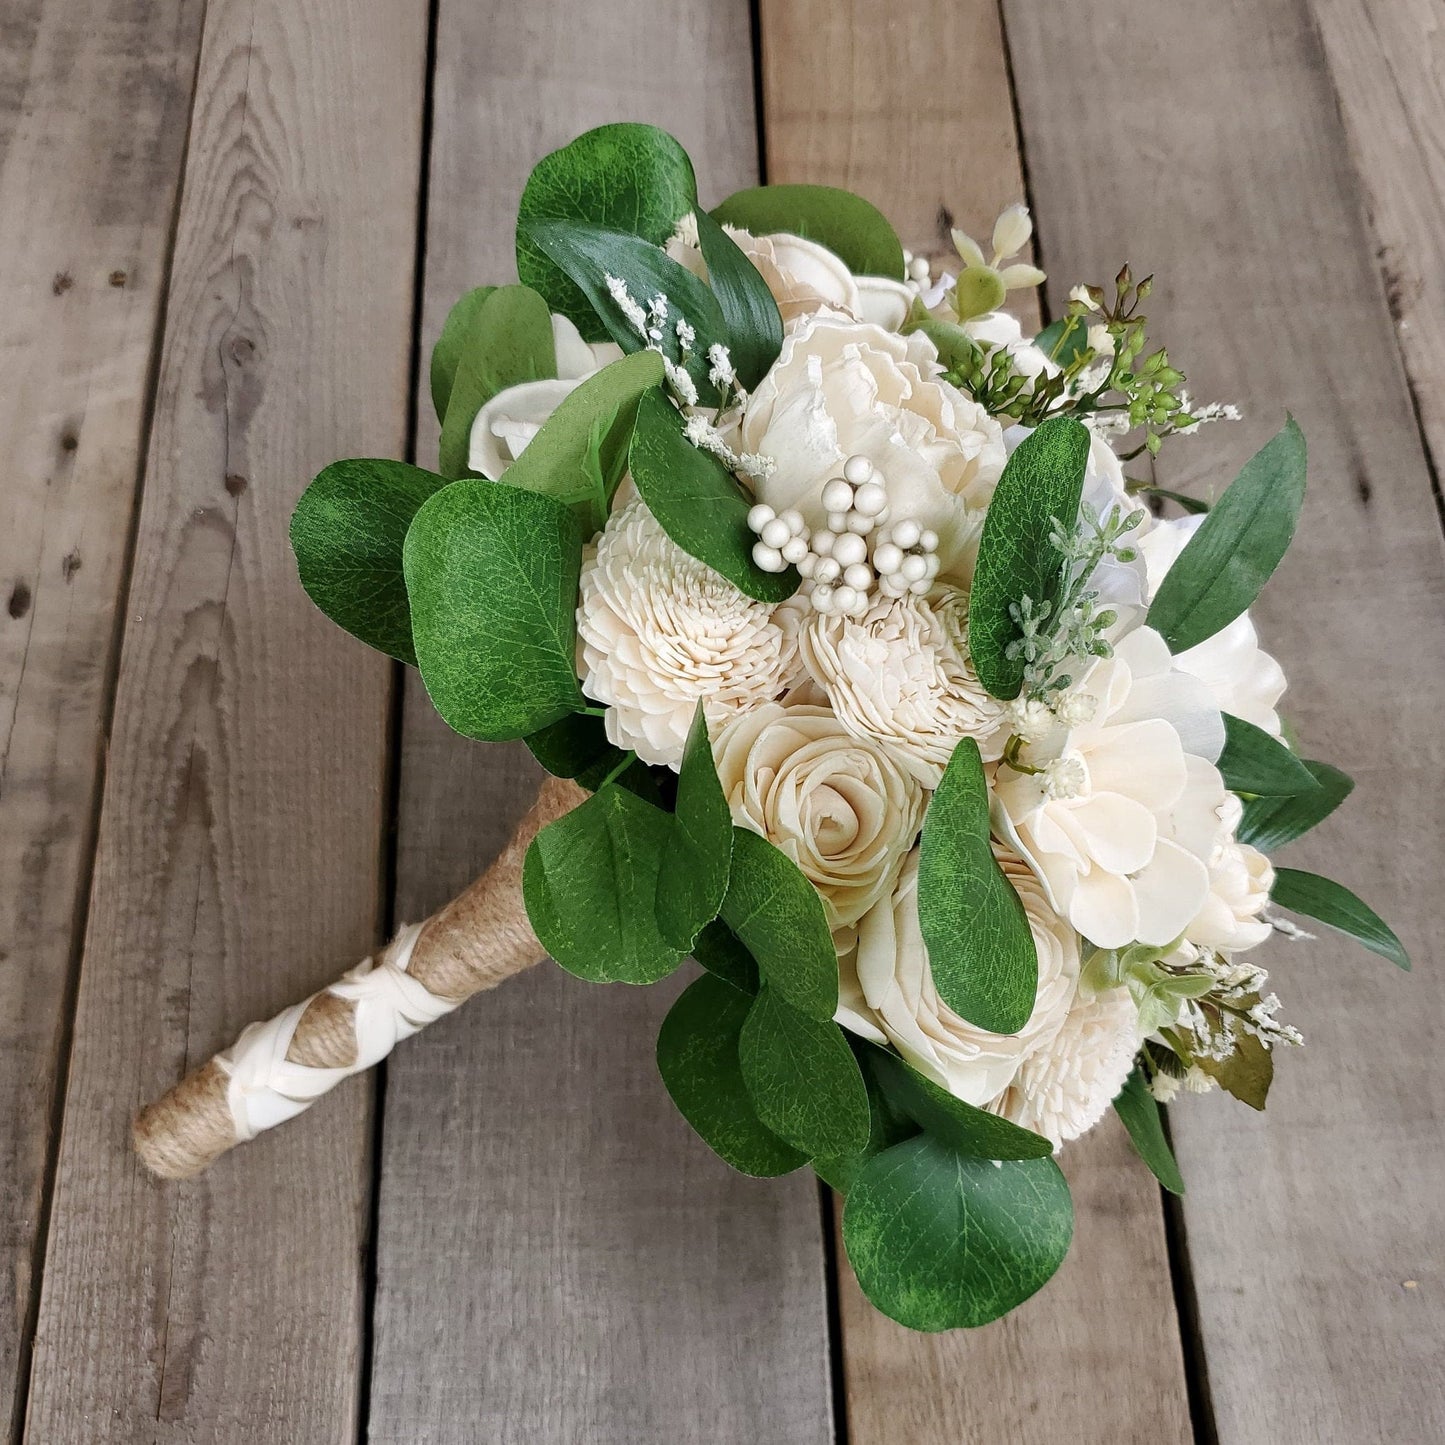 Wood Flower Bridal Bouquet, Wedding Brooch Bouquet, Wooden Flowers Bouquet, Bride Bouquet, Wedding Florals